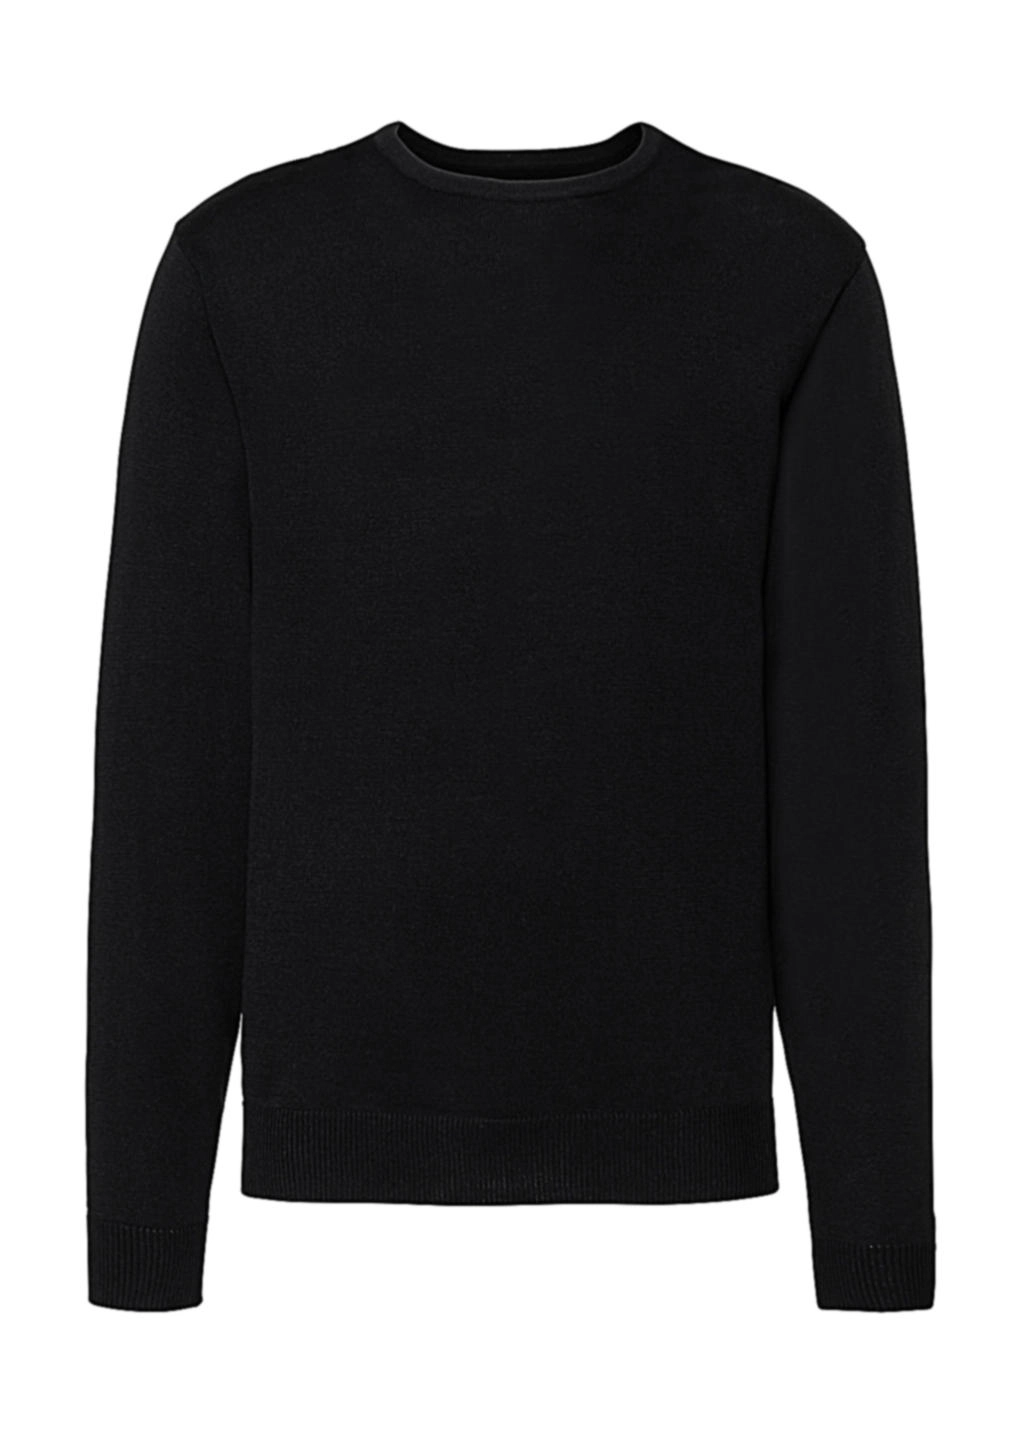 Men`s Crew Neck Knitted Pullover zum Besticken und Bedrucken in der Farbe Black mit Ihren Logo, Schriftzug oder Motiv.